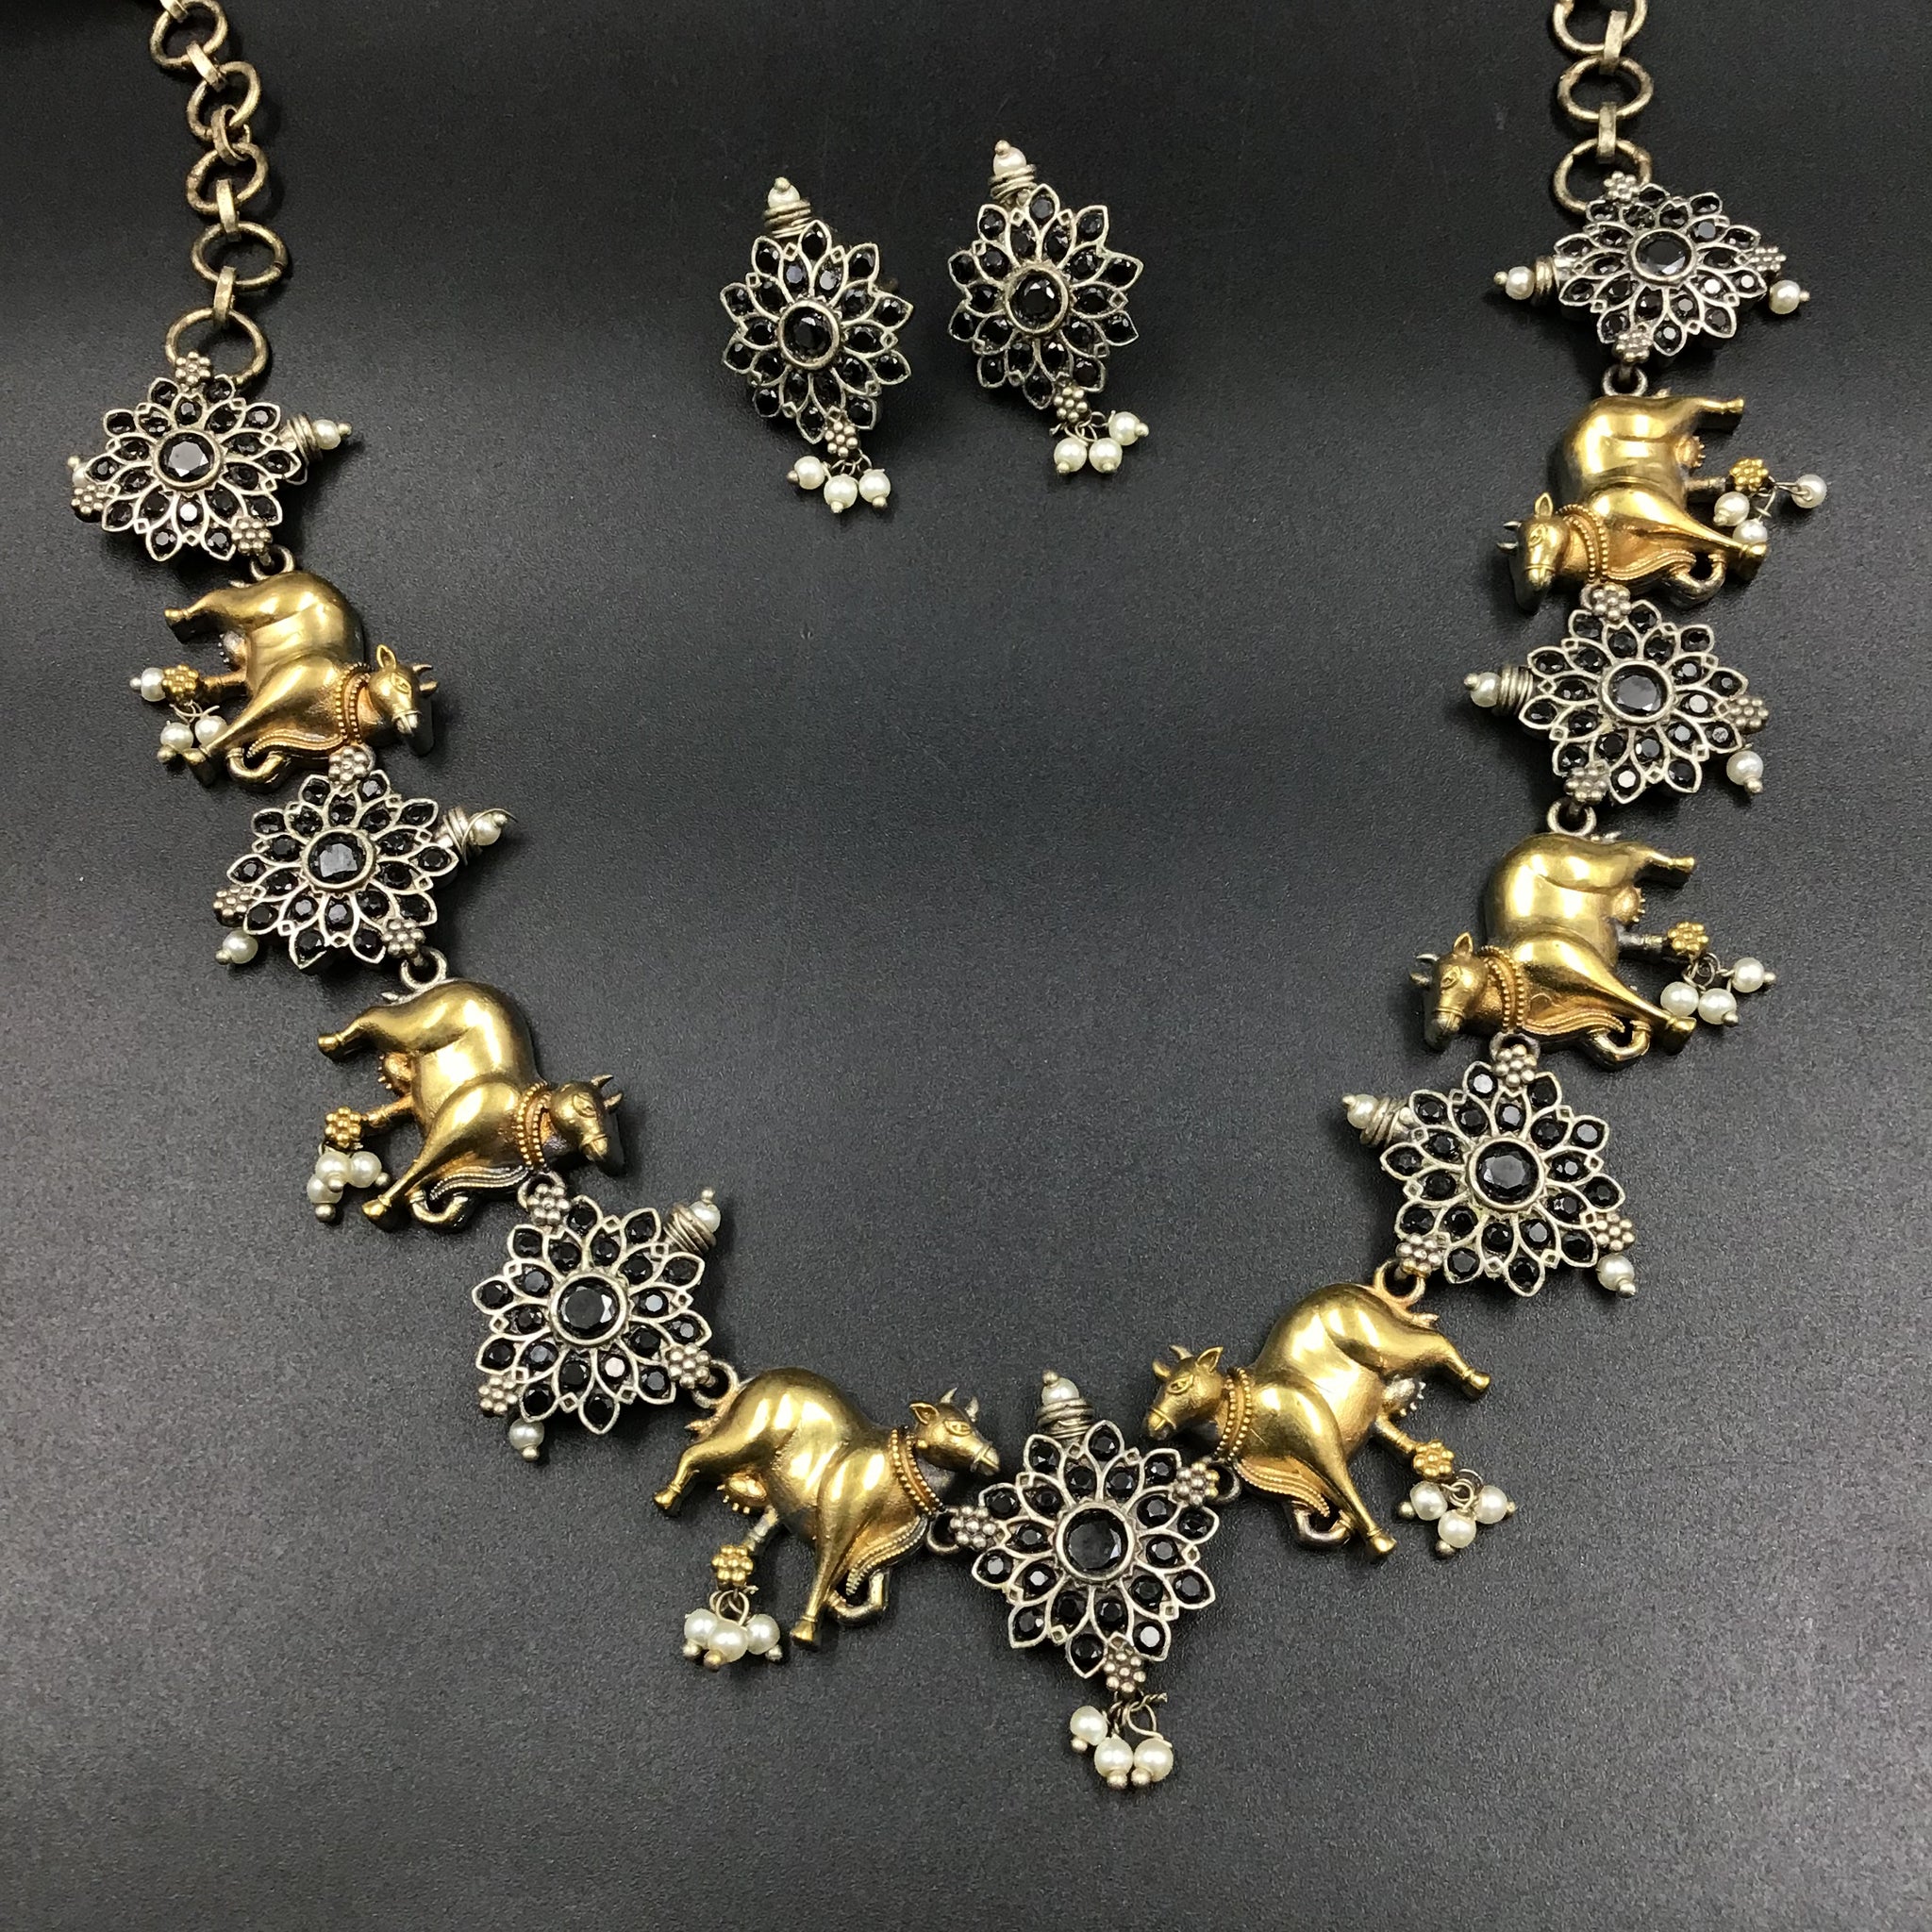 Round Neck Oxidized Necklace Set 4712-59 - Dazzles Jewellery